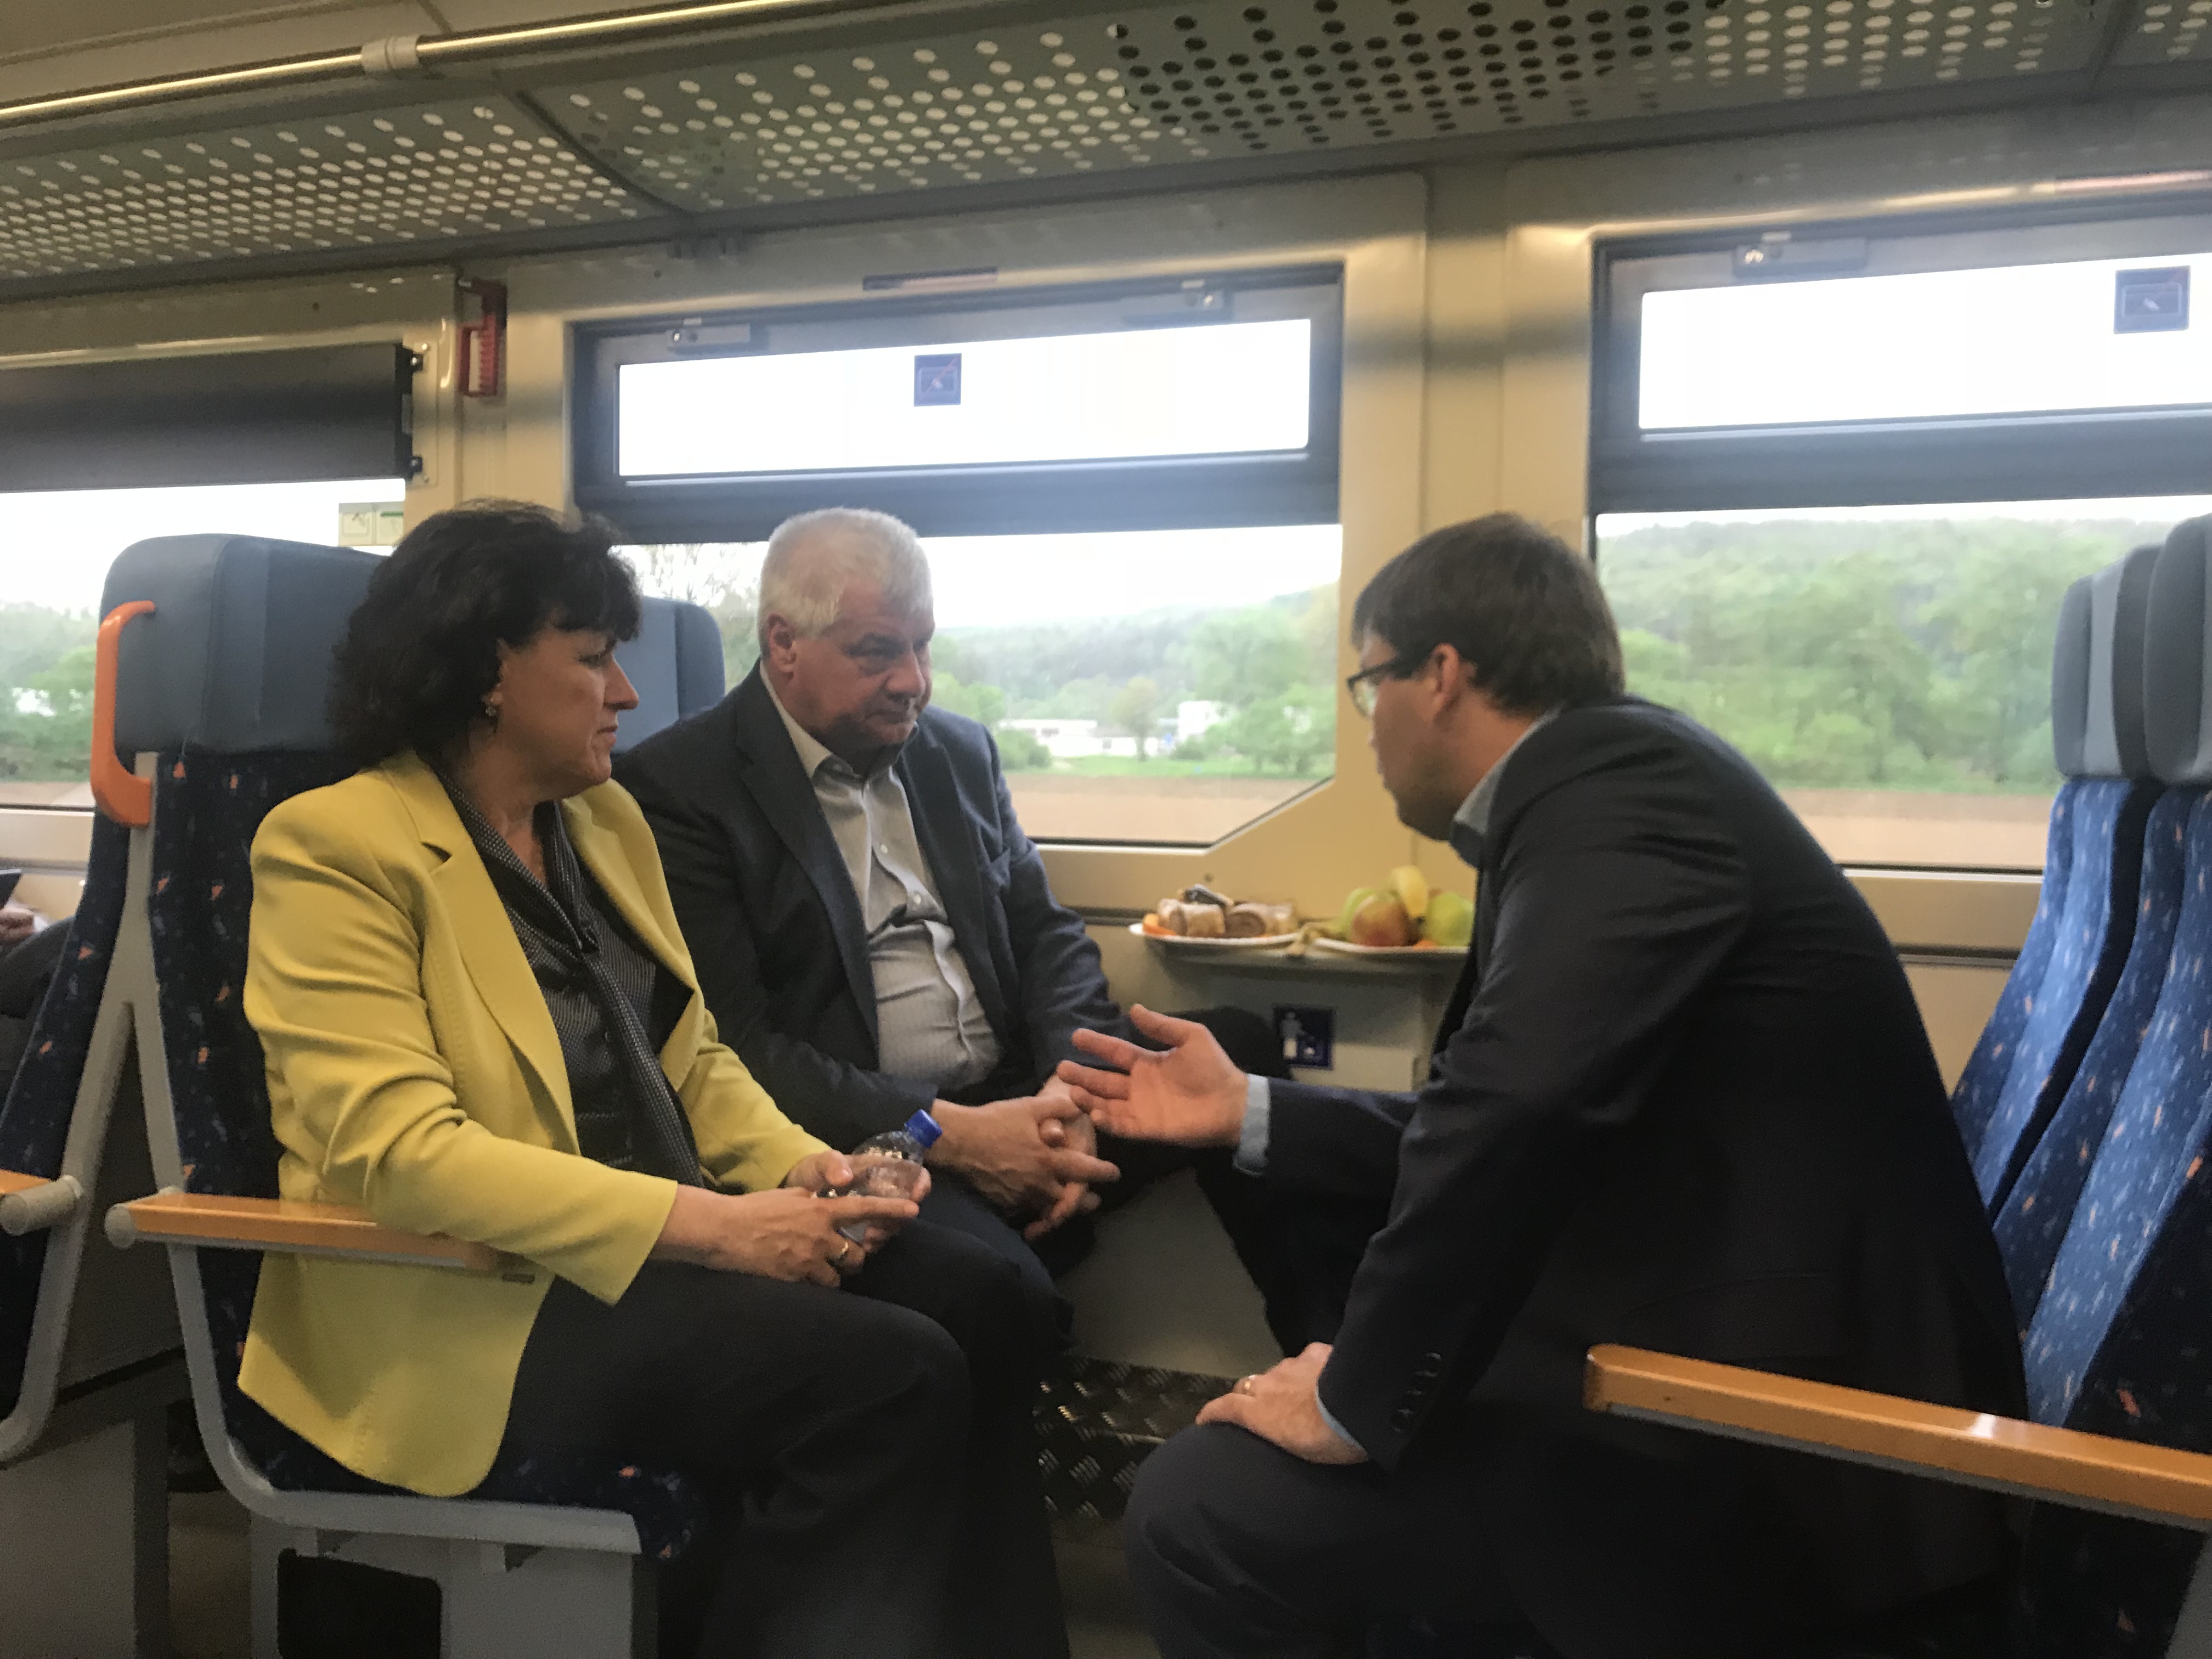 Érsek Árpád közlekedésügyi miniszter és Filip Hlubocký a vonaton tárgyalják meg a vasúti személyforgalom újranyitásának ügyét (fotó: mindop.sk)